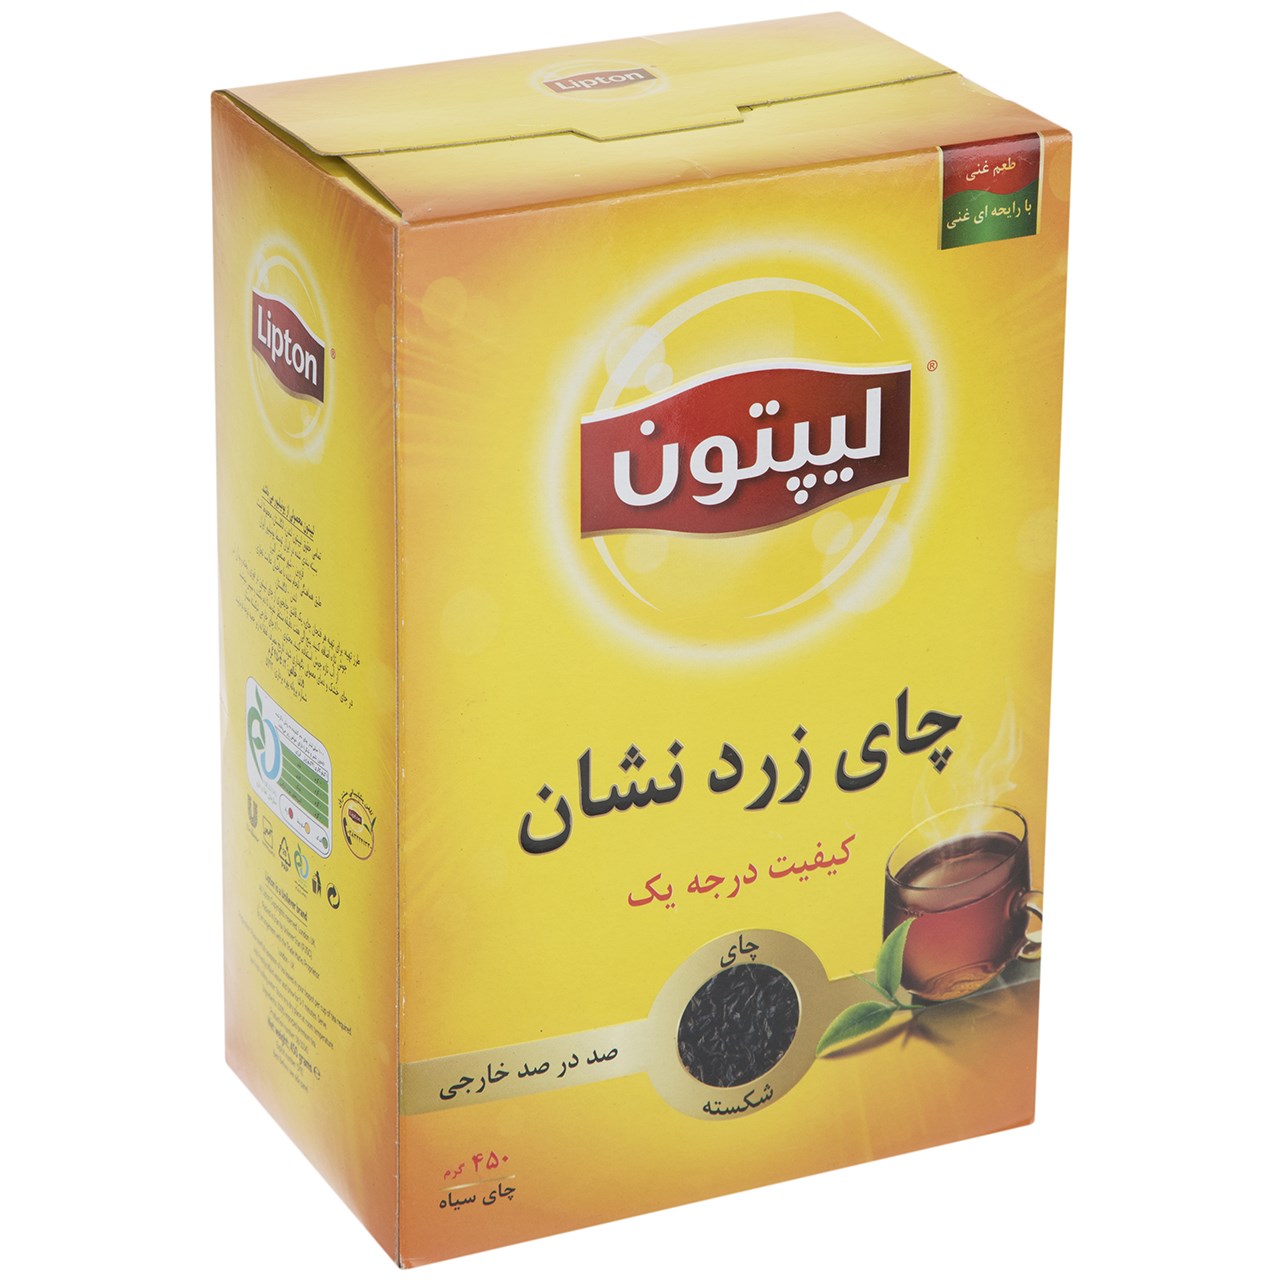 چای سیاه لیپتون مدل Yellow Label مقدار 450 گرم